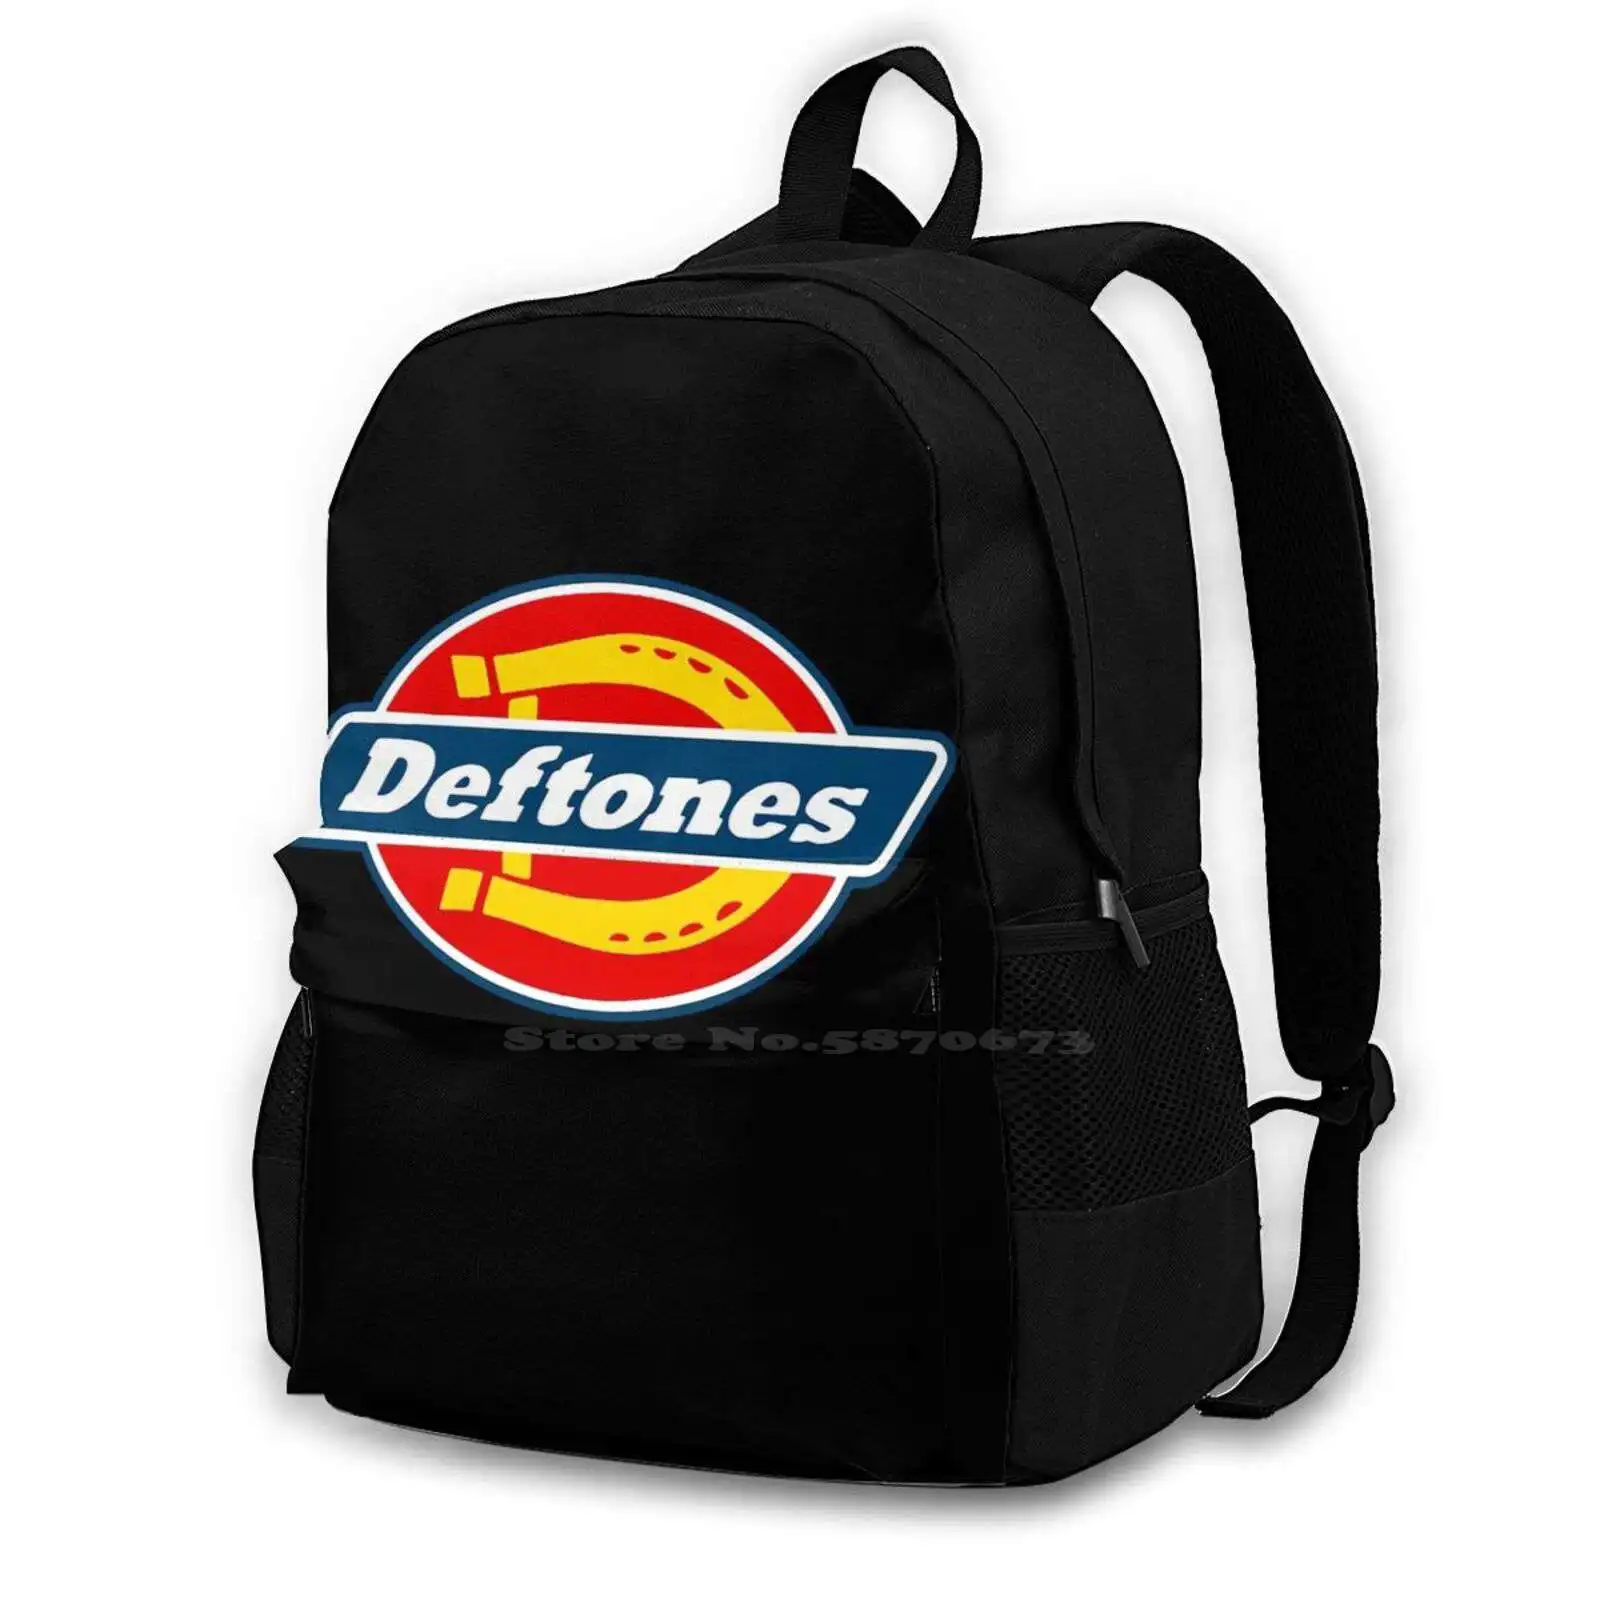 

Deftones Heacy Meta School Bags For Teenage Girls Laptop Travel Bags Deftones Music Band Hardcore Heacy Metal Metal Vintage 90S